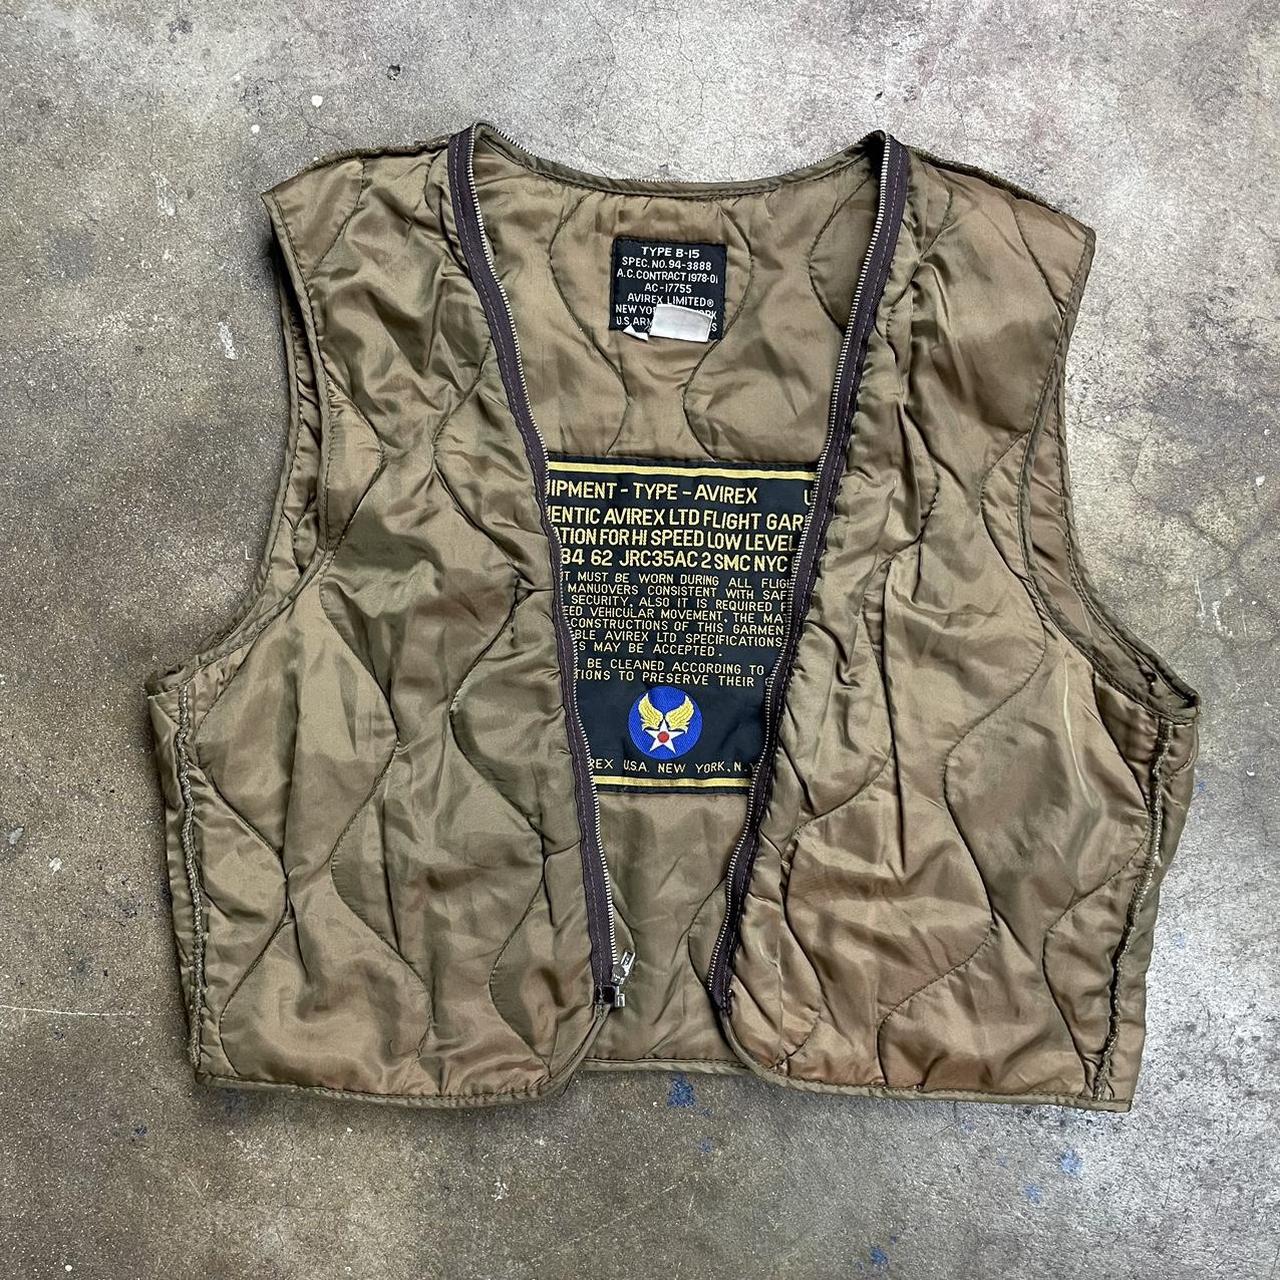 Avirex b-15 jacket liner vest Medium Small... - Depop